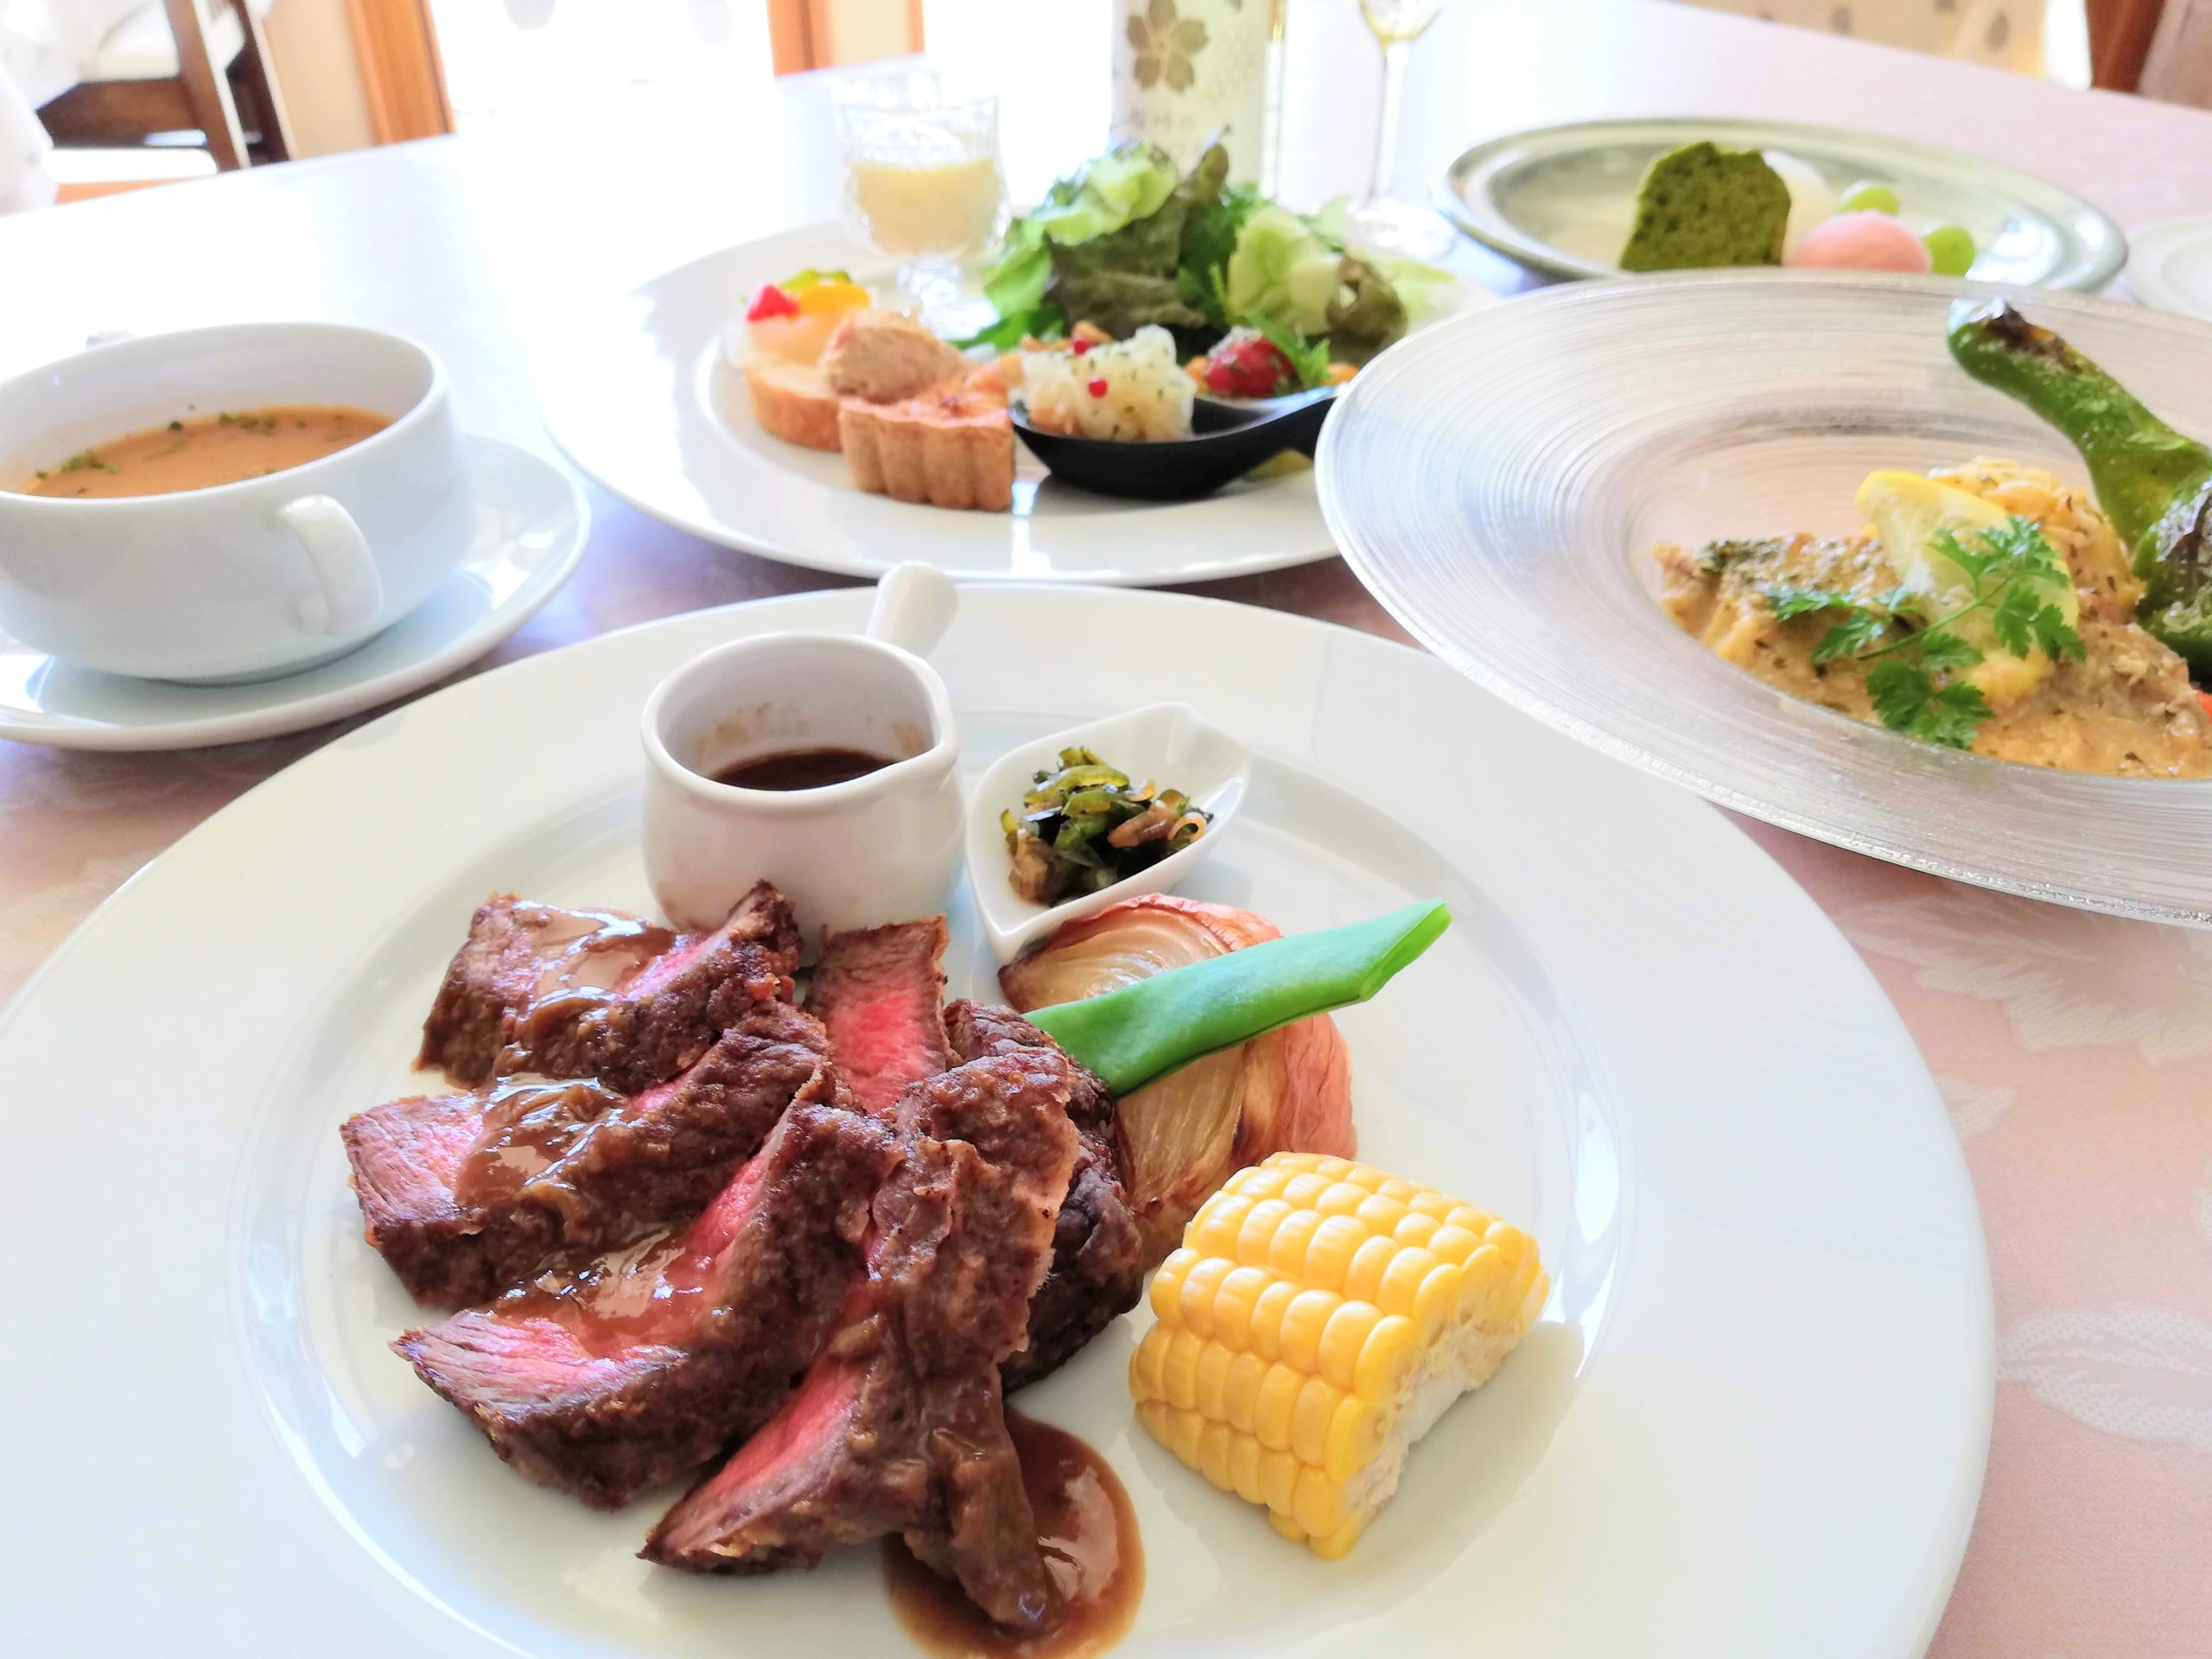 びーはいぶのコース料理。福島牛のステーキと魚料理、7品程度の前菜の盛り合わせが舌と目を楽しませてくれる。